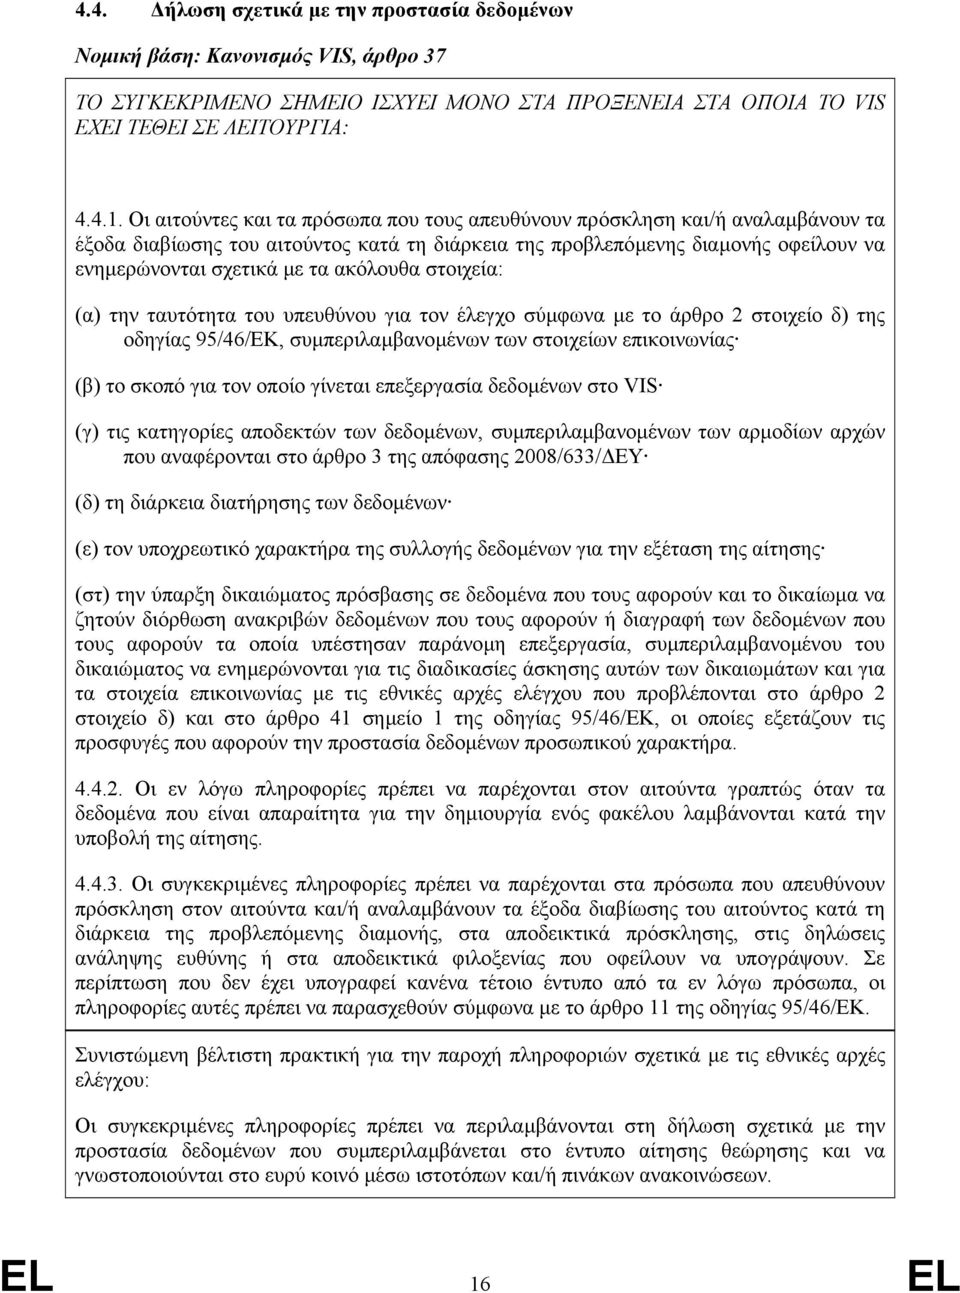 ακόλουθα στοιχεία: (α) την ταυτότητα του υπευθύνου για τον έλεγχο σύµφωνα µε το άρθρο 2 στοιχείο δ) της οδηγίας 95/46/EΚ, συµπεριλαµβανοµένων των στοιχείων επικοινωνίας (β) το σκοπό για τον οποίο